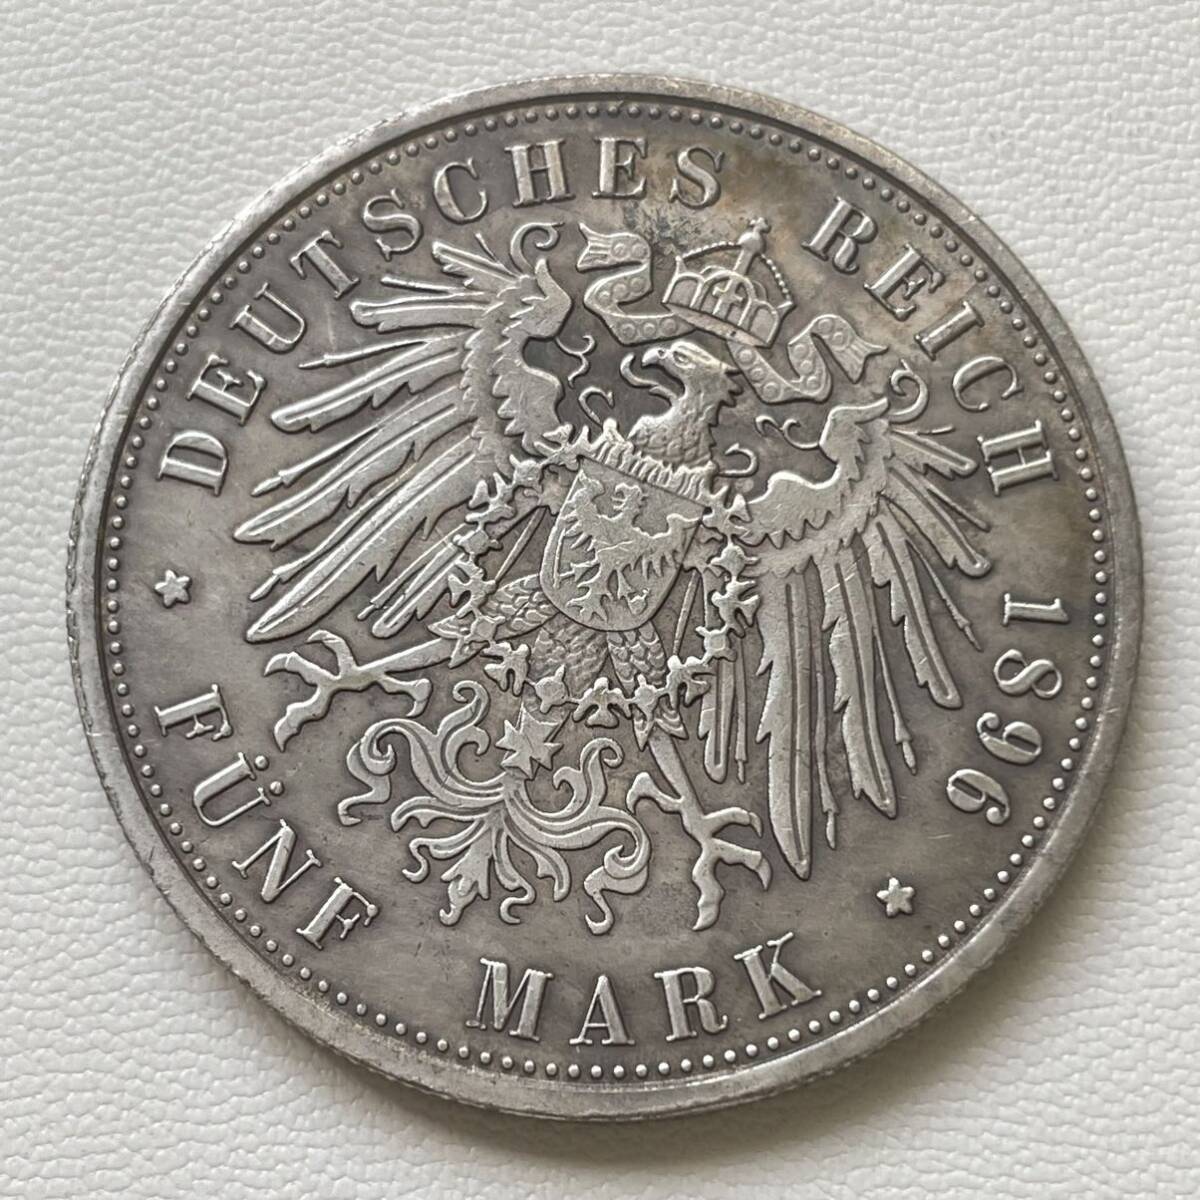 ドイツ 硬貨 古銭 ハンブルク州 1896年 ハンブルク州紋章 キャット・キャッスル マルク 国章 双頭の鷲 コイン 重20.49g_画像2